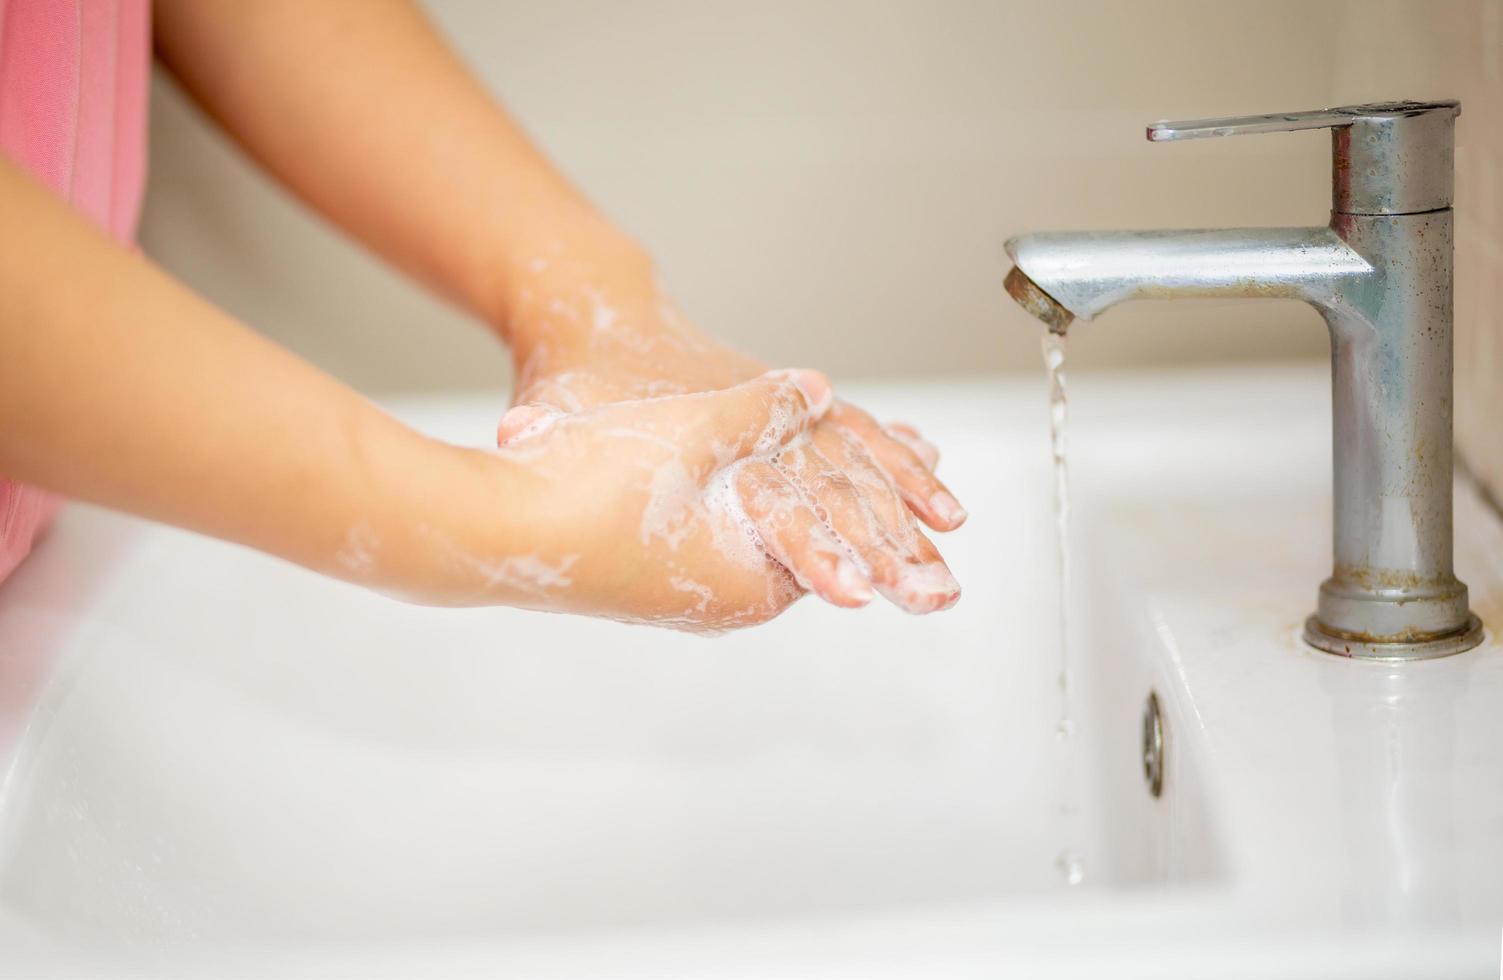 hygiène. nettoyer les mains. se laver les mains avec du savon. jeune femme se lavant les mains avec du savon au-dessus du lavabo dans la salle de bain, gros plan. covid19. coronavirus. photo